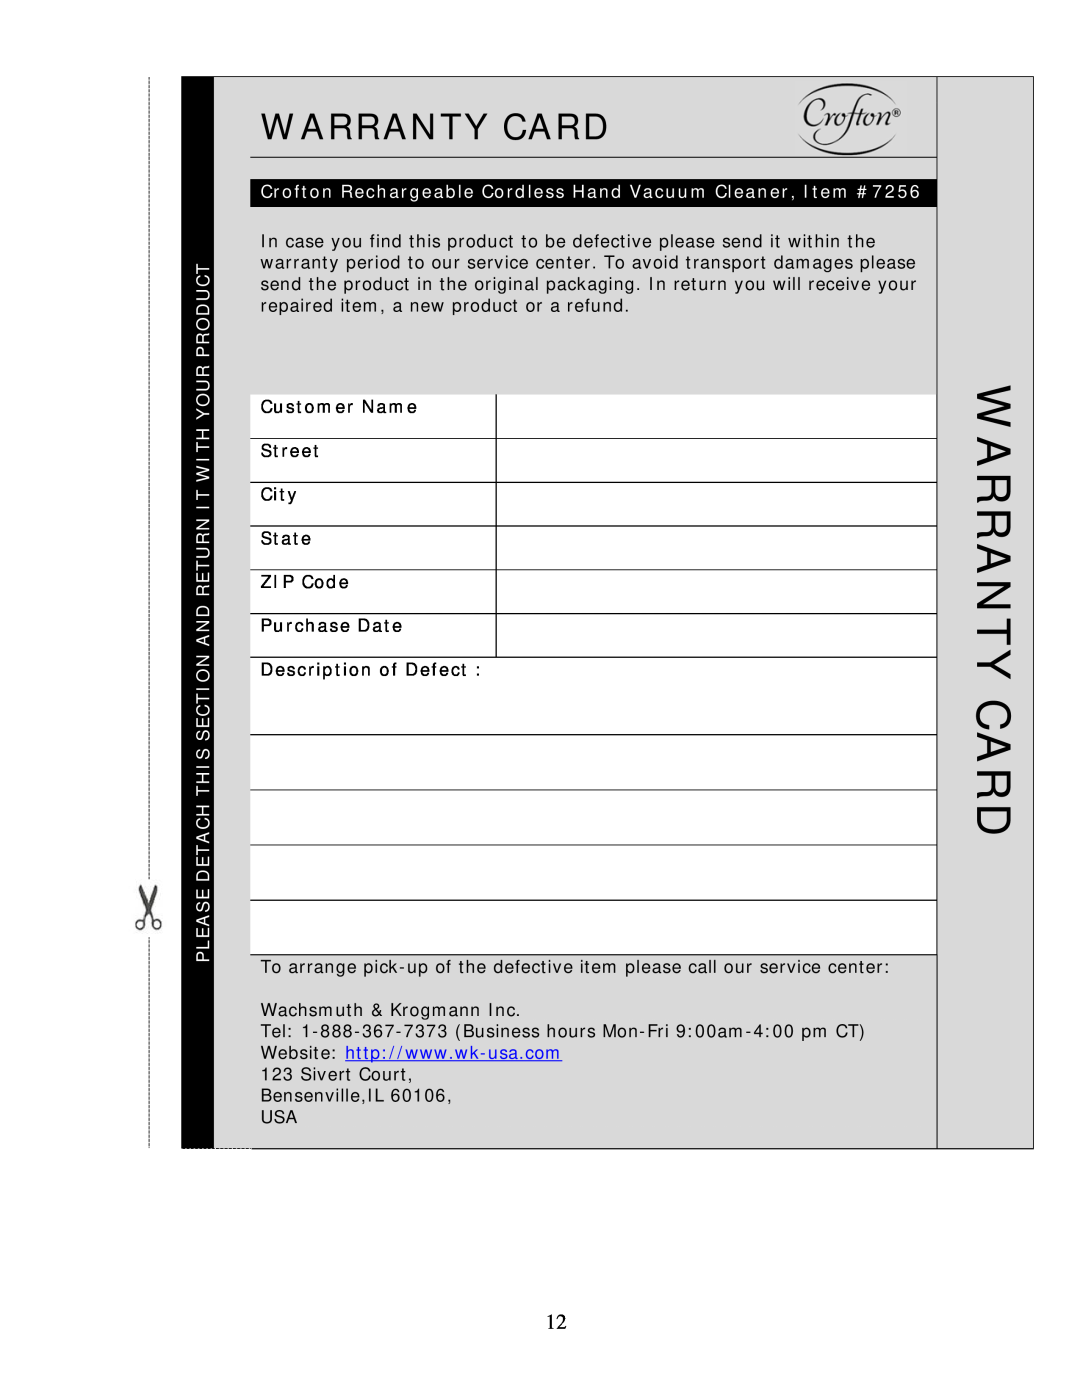 Wachsmuth & Krogmann Item# 7256 manual Warranty Card 